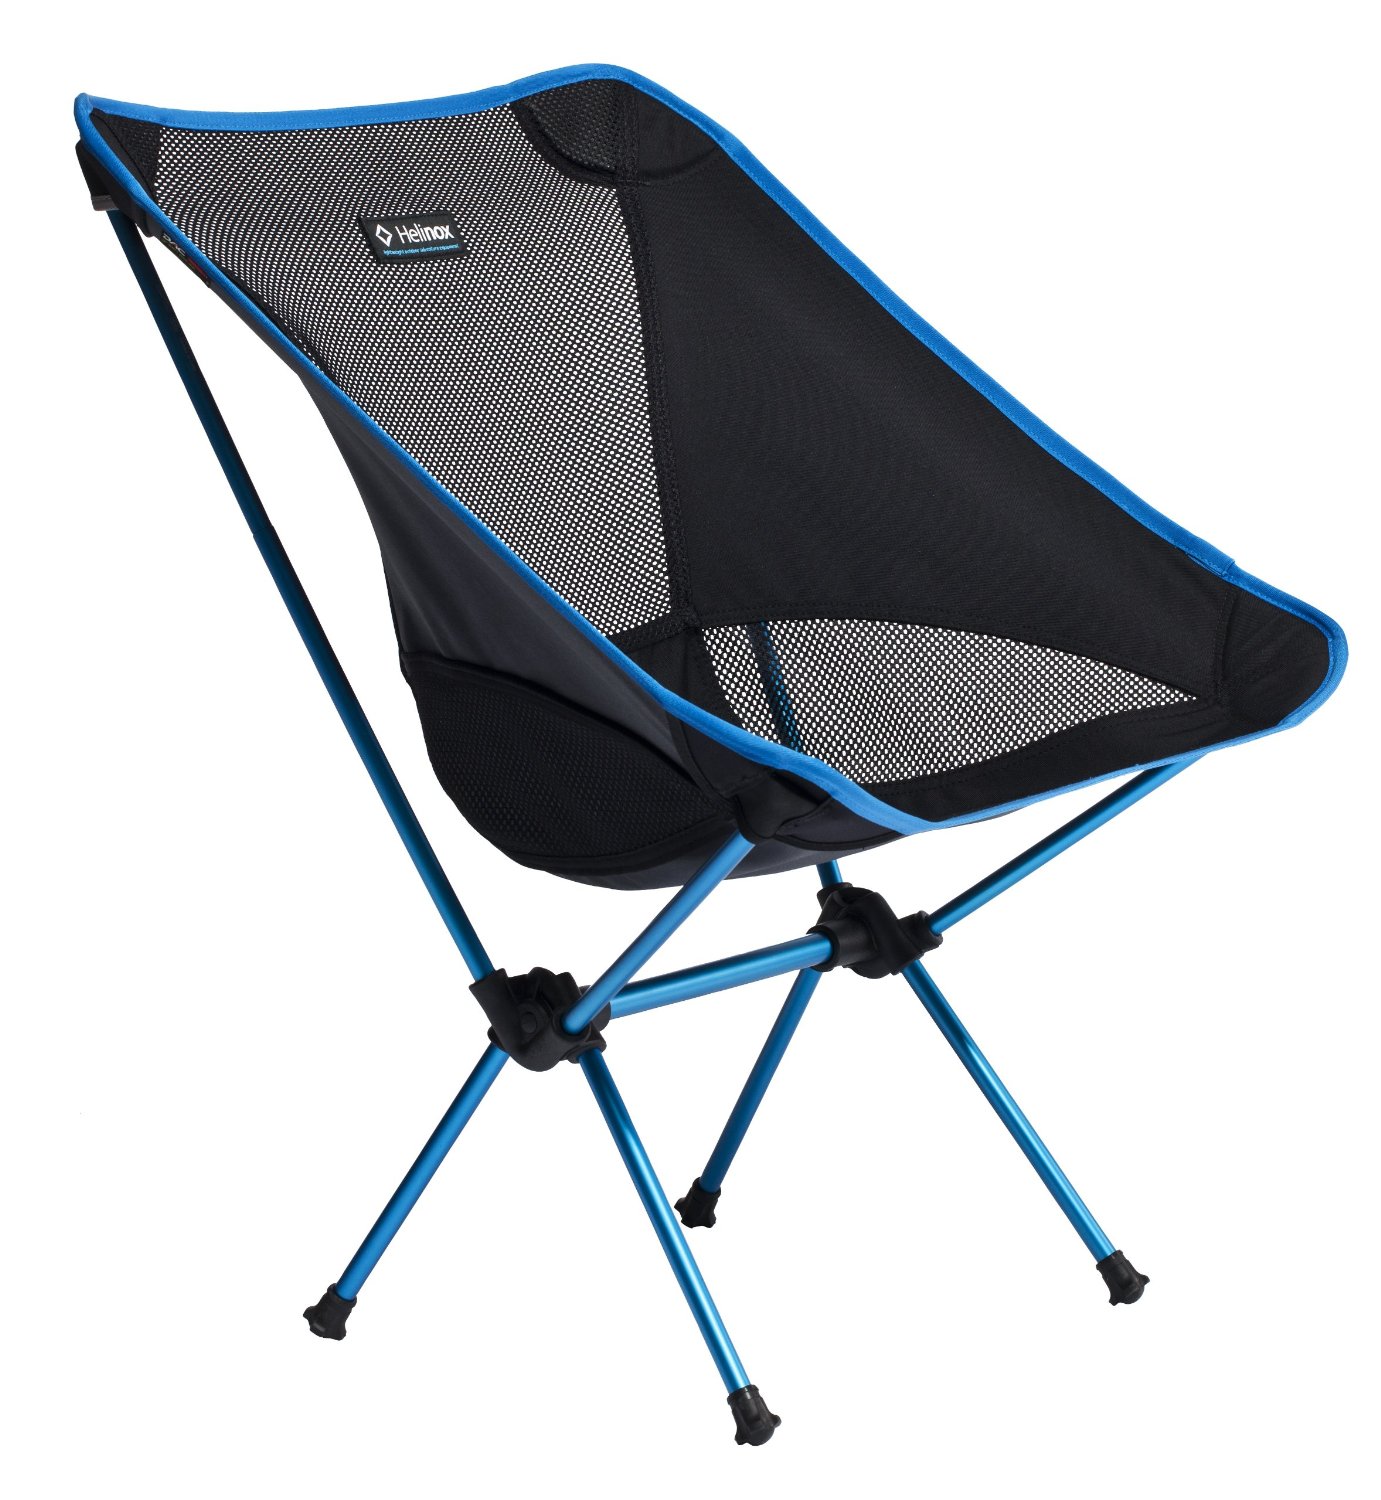 lightweight camping chair